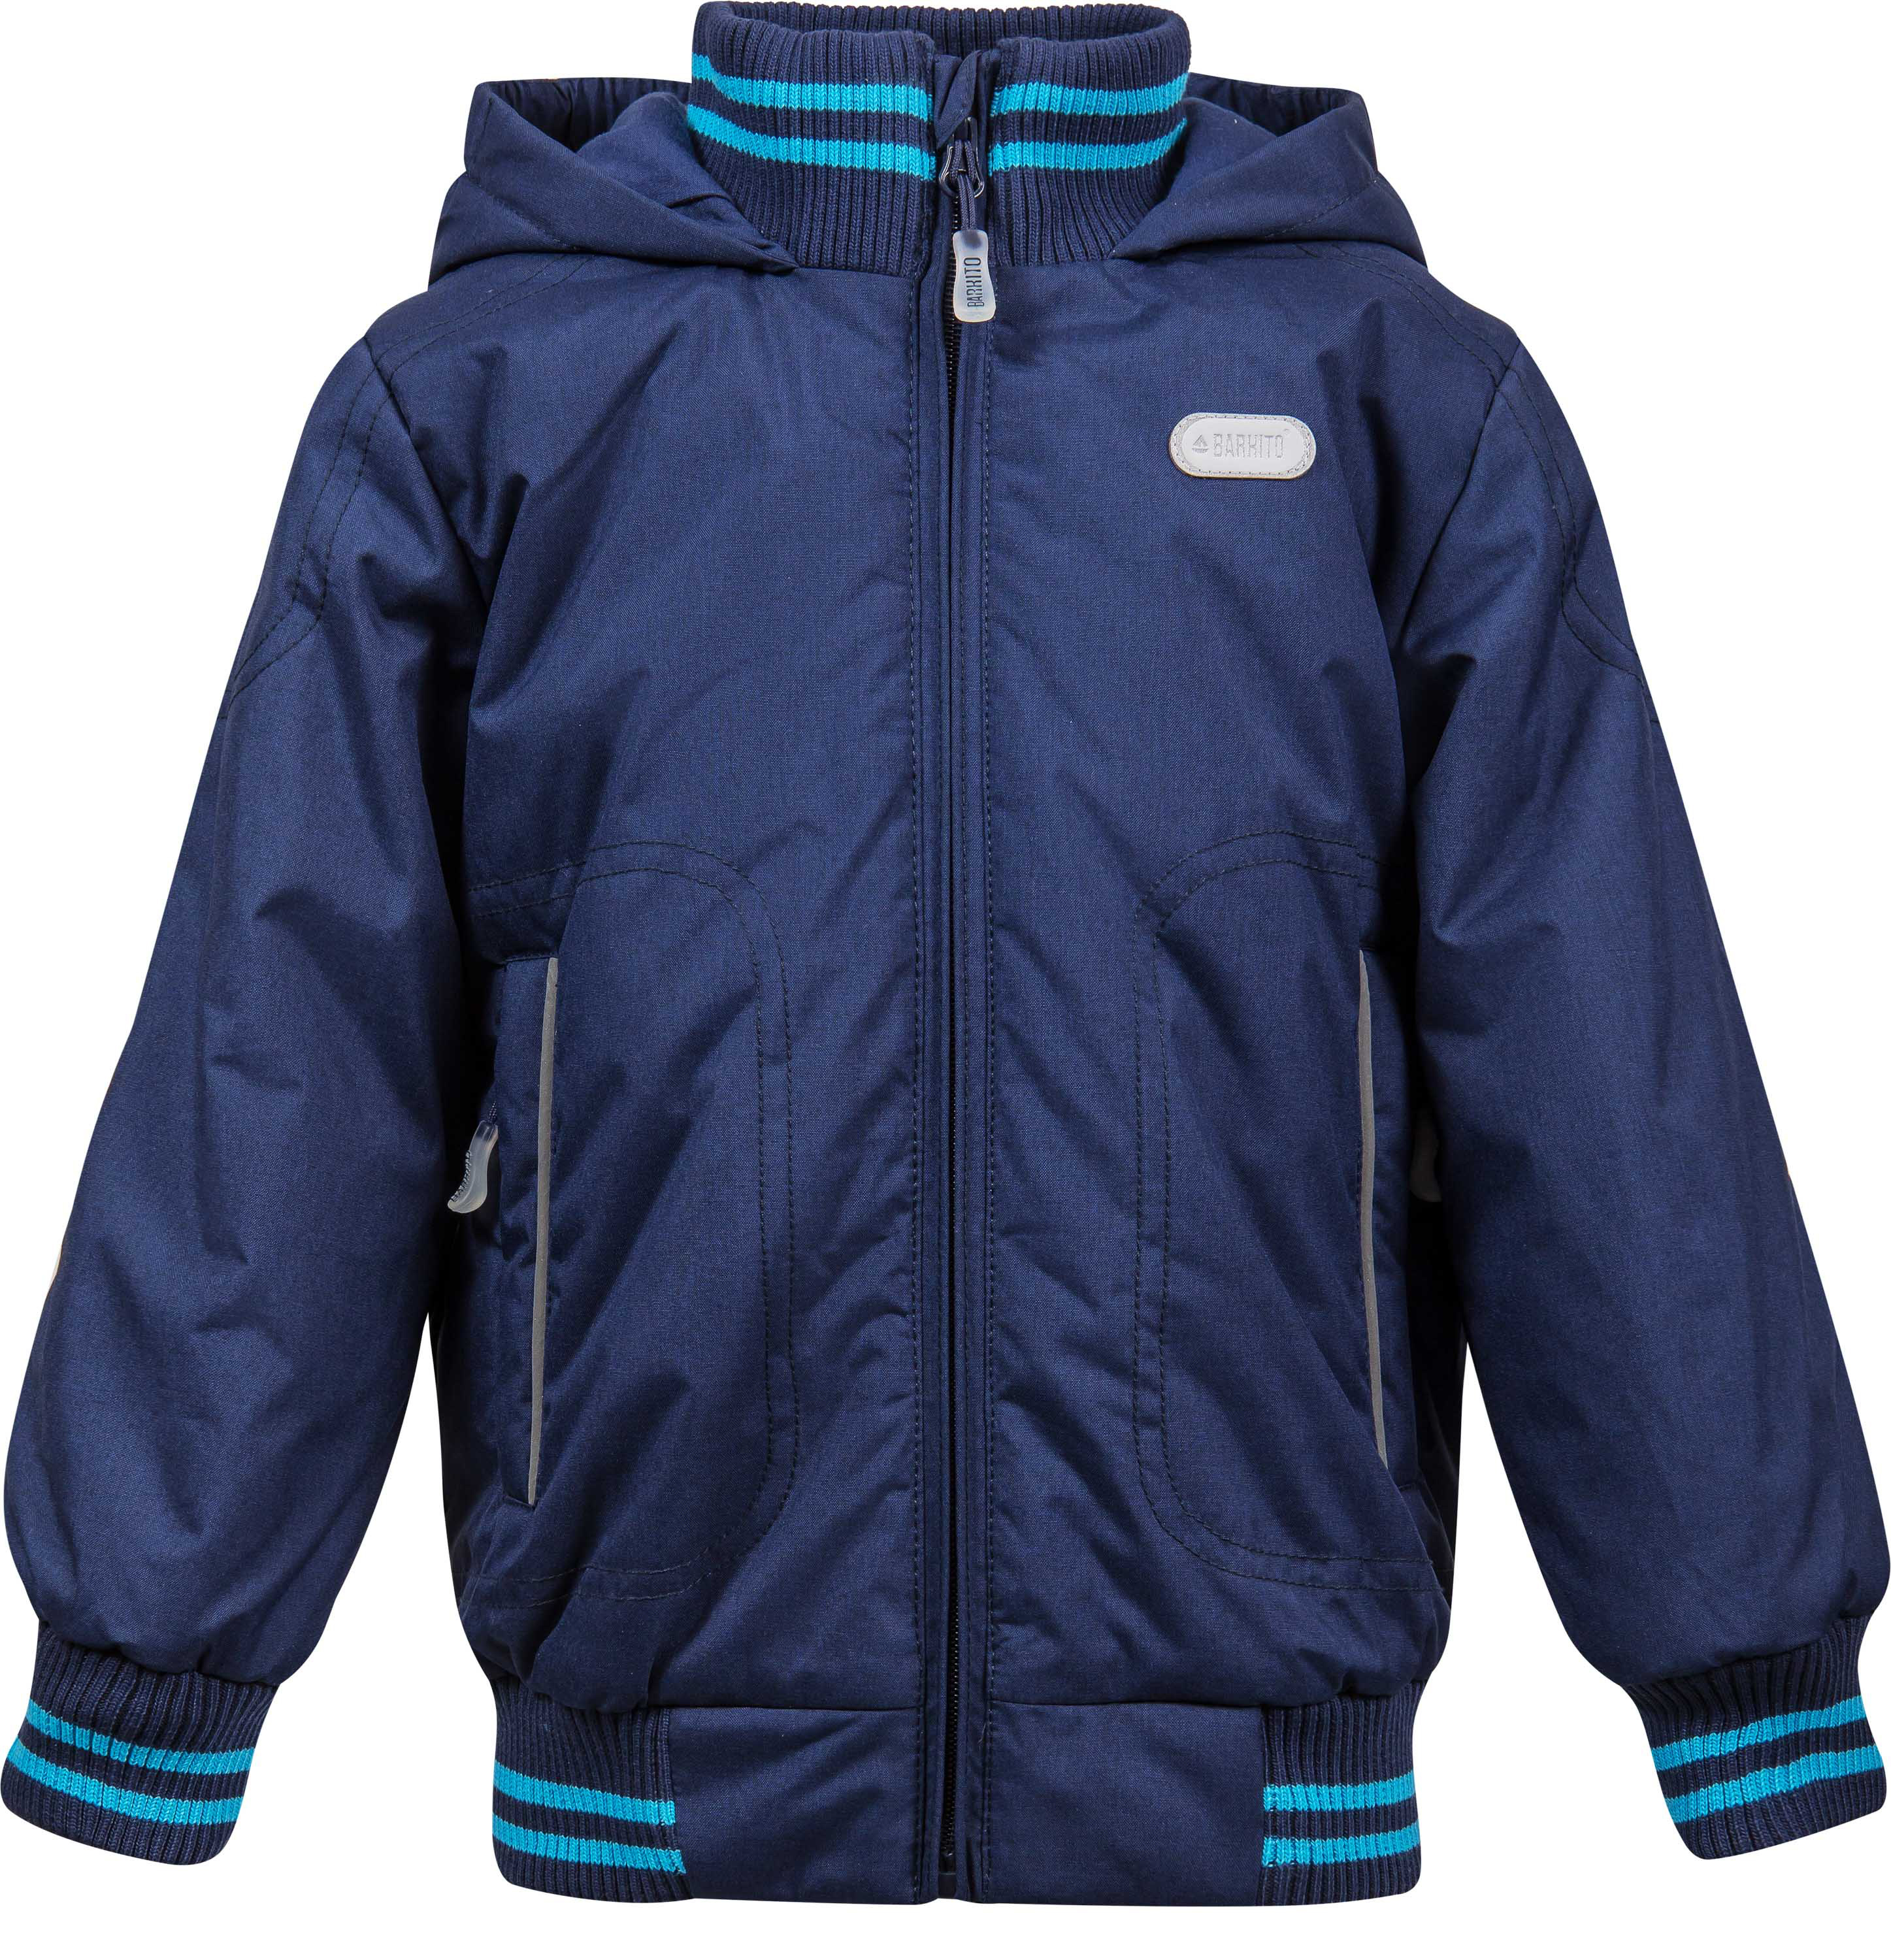 Утепленная куртка для мальчика. Куртка Баркито для мальчика осень синяя. Куртка Barkito для мальчика. Barkito куртка w17b4006p кораблик. Синяя куртка для мальчика.